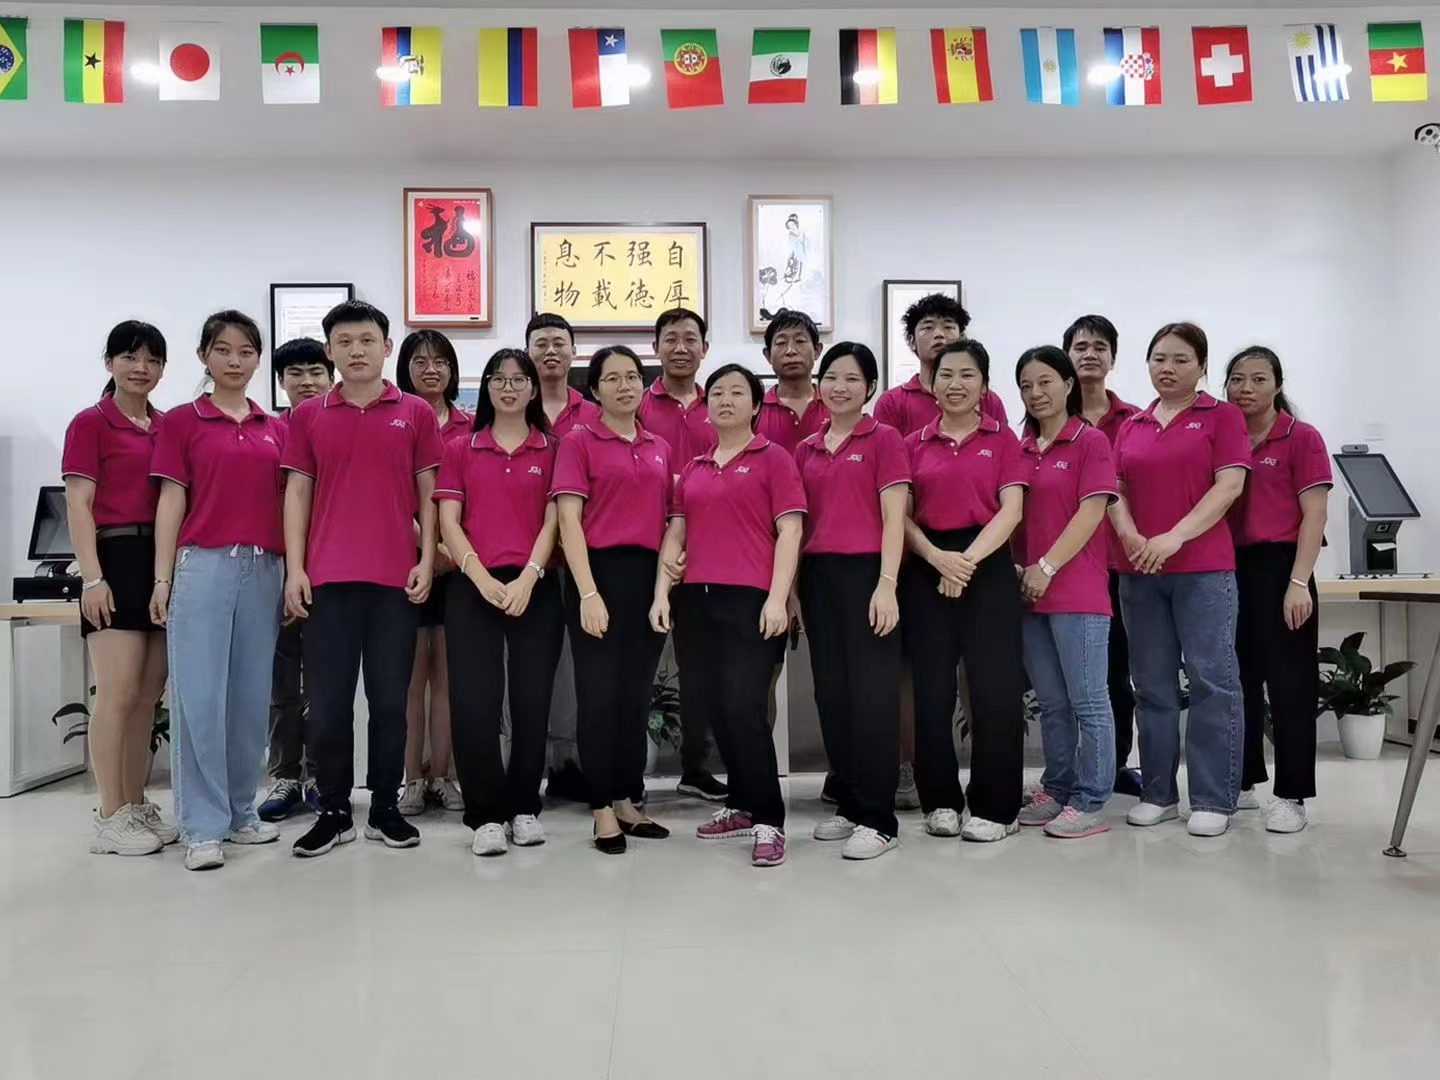 شرکت کامپیوتر لمسی شنژن سوئی یی با مسئولیت محدود مسابقات تنیس روی میز کارمندان را برگزار می کند